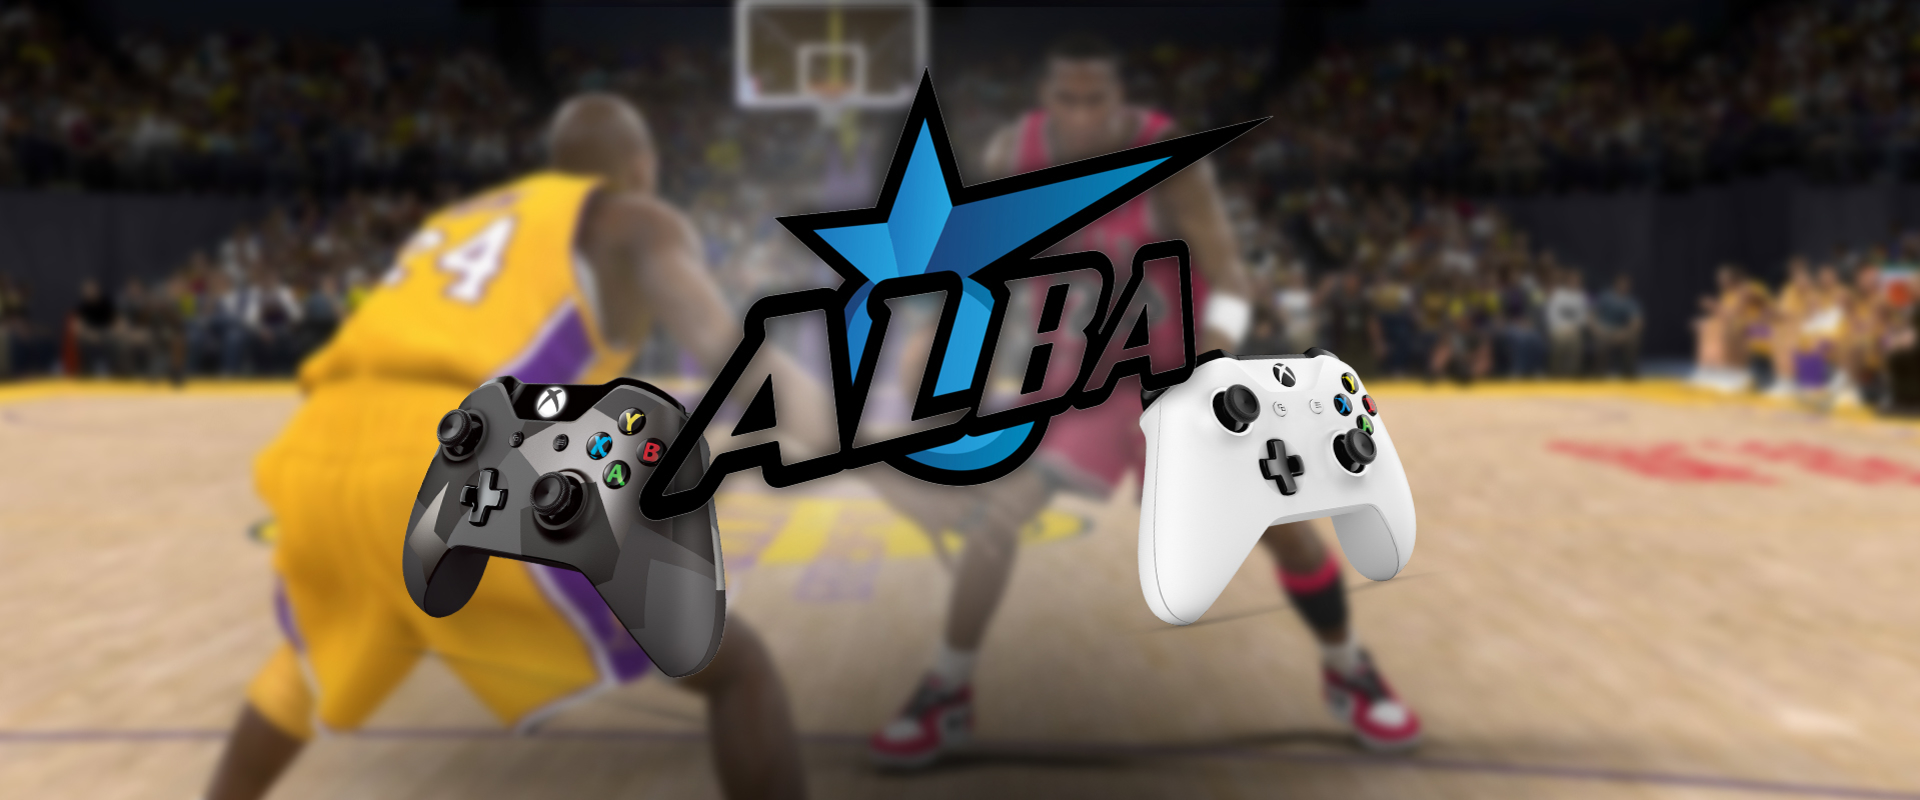 NBA e-sport bajnokságot indít az Alba, melyben a profi kosarasaik is részt vesznek